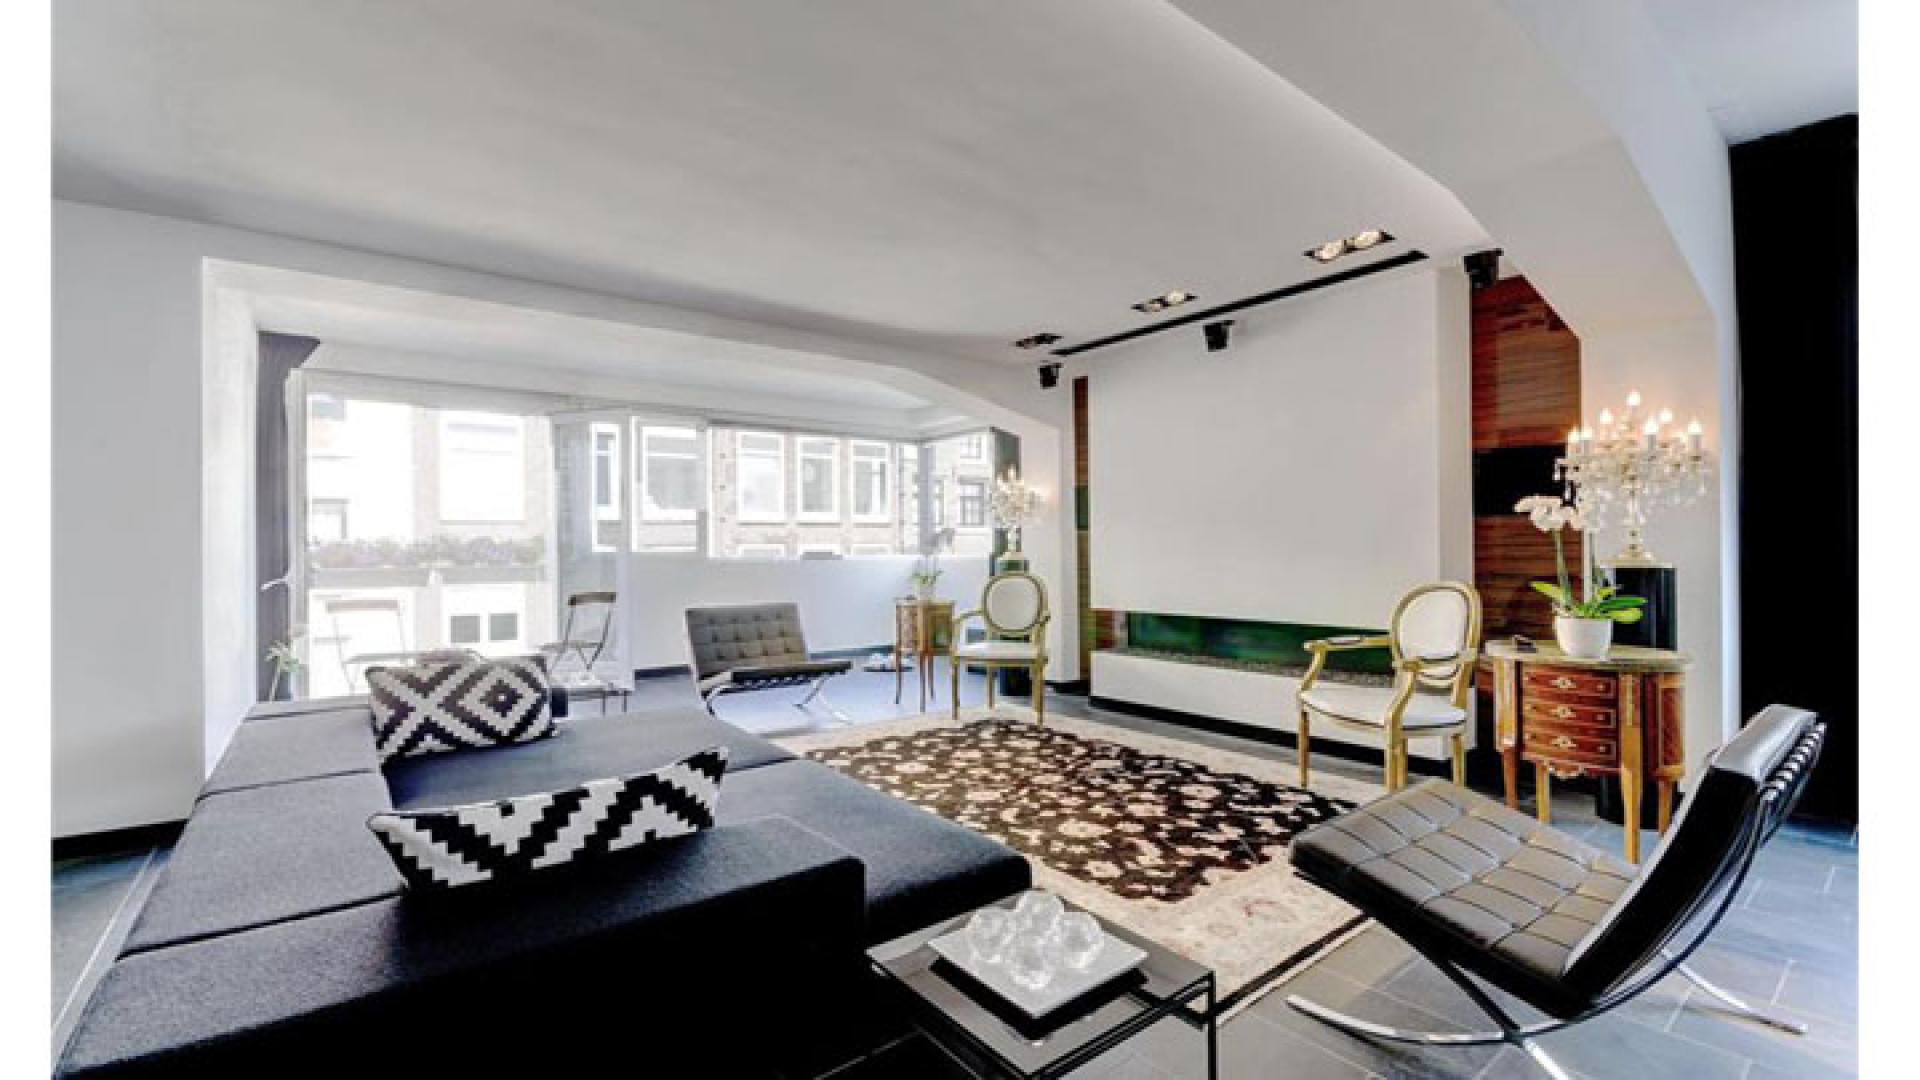 Maik de Boer zet zijn prachtige design appartement te koop. Zie foto's